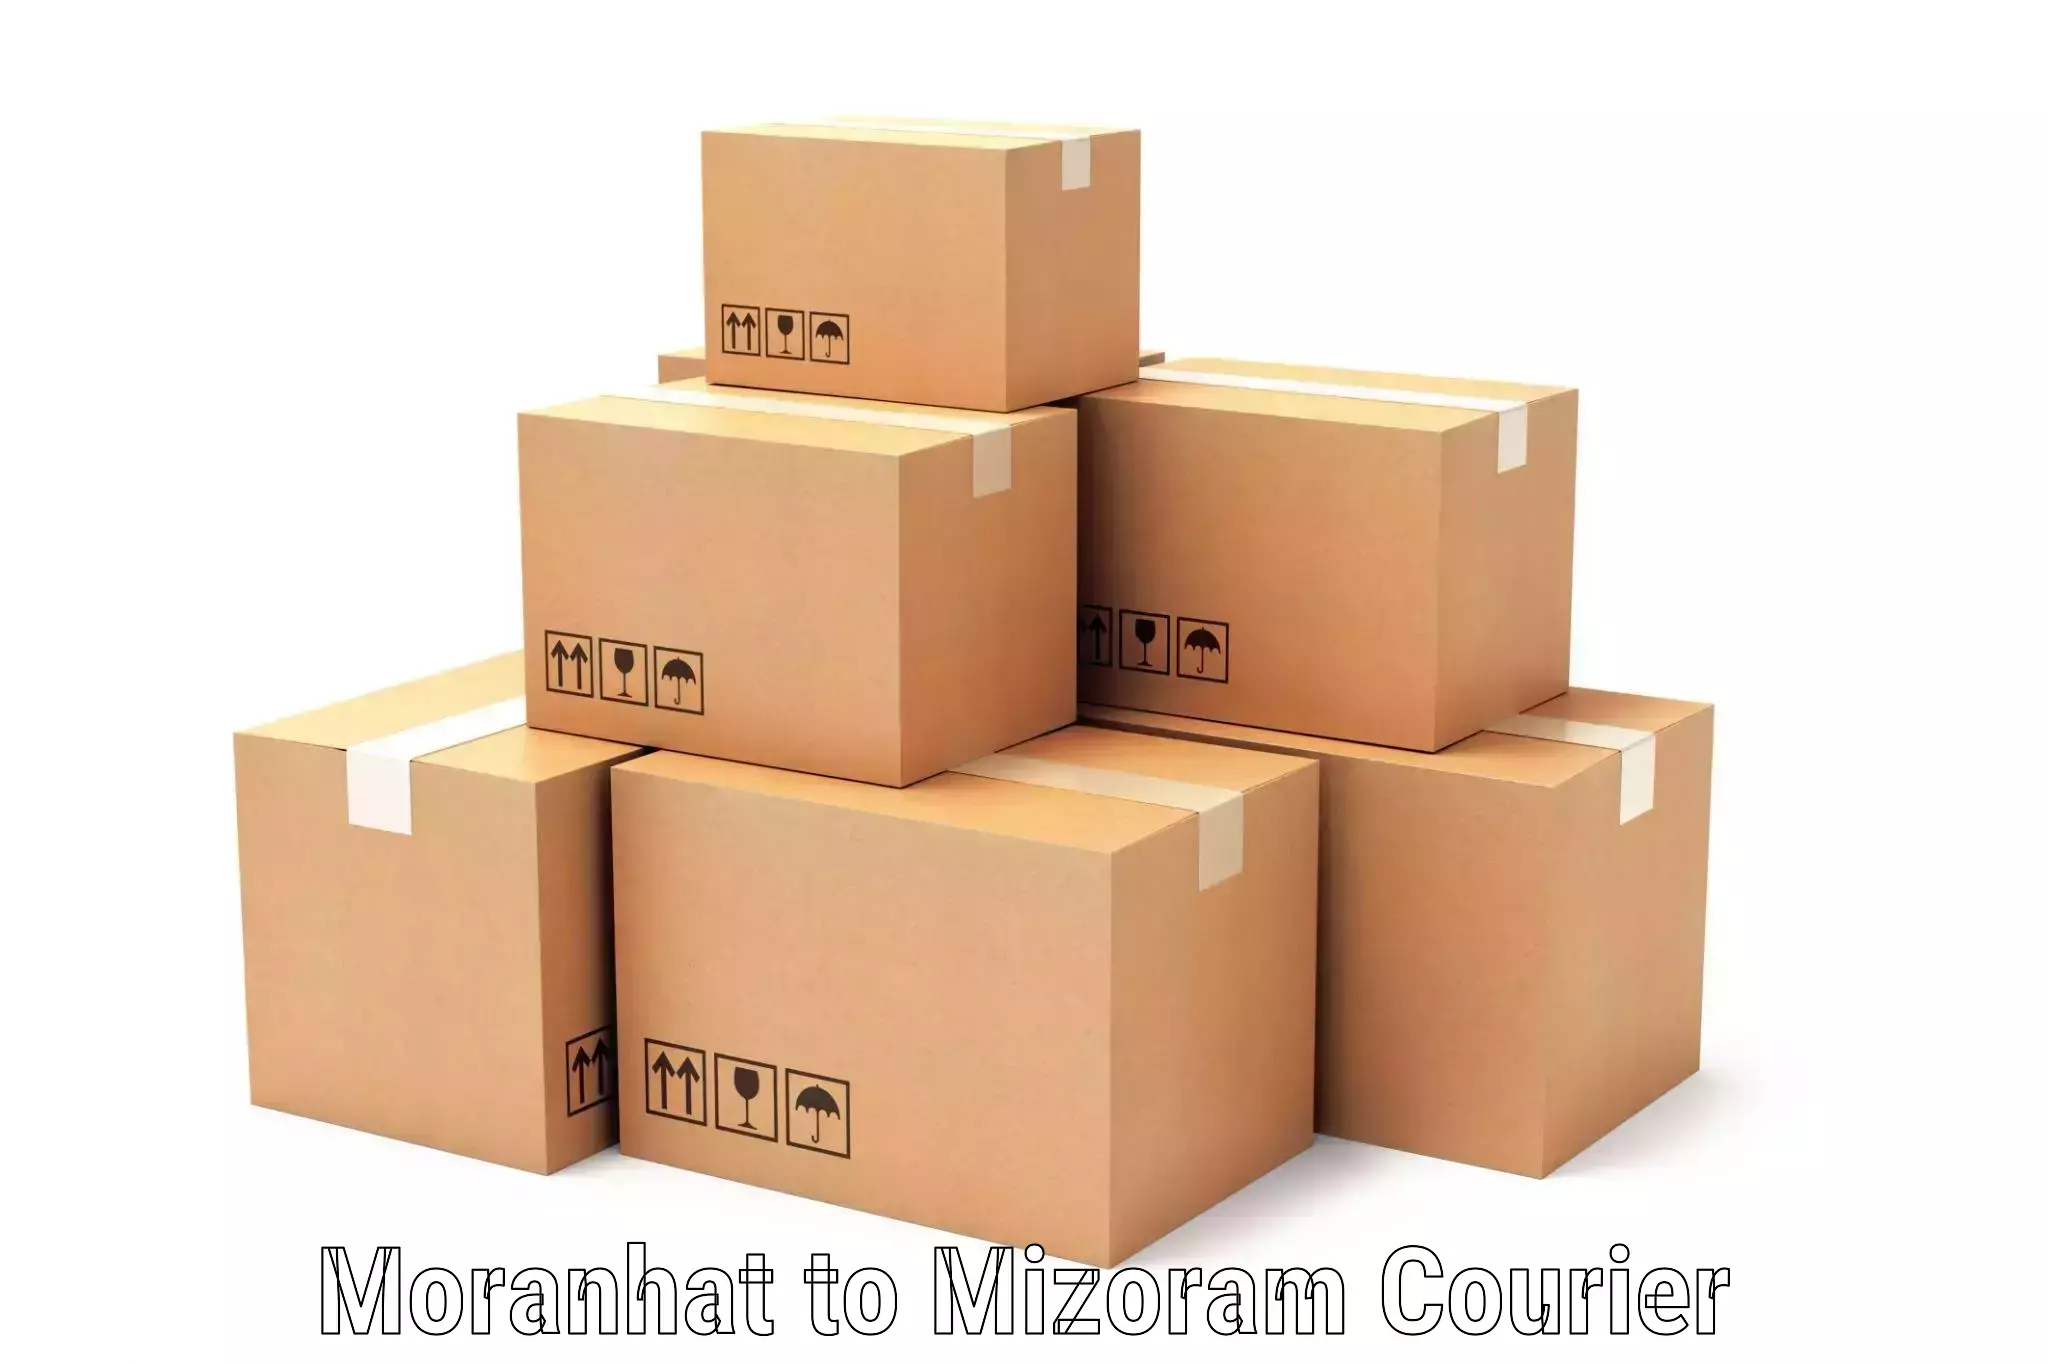 Logistics management Moranhat to Mizoram